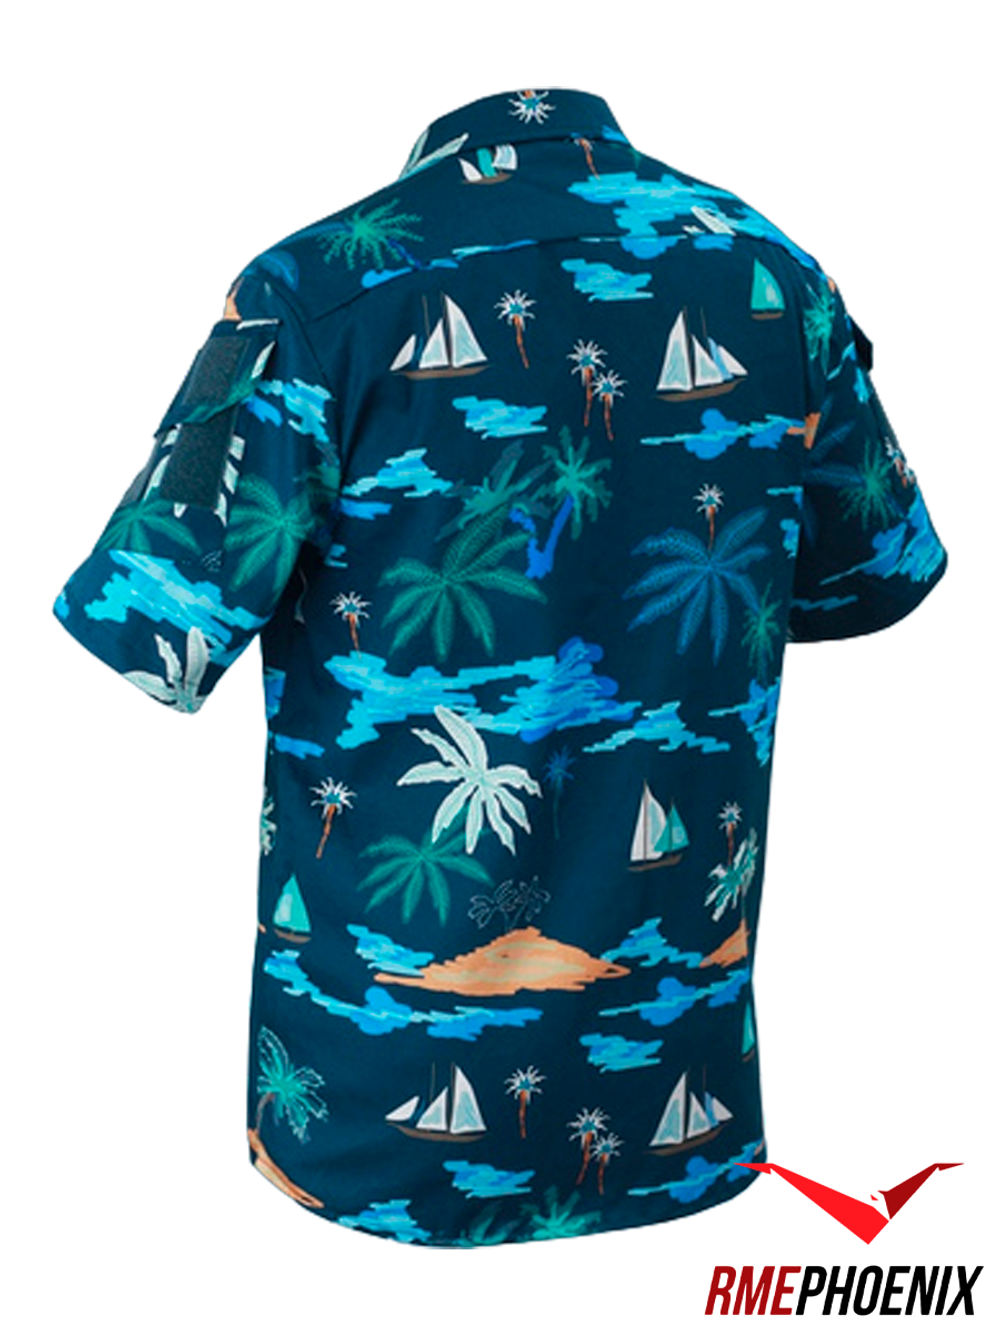 Рубашка Phoenix Hawaii. Isla